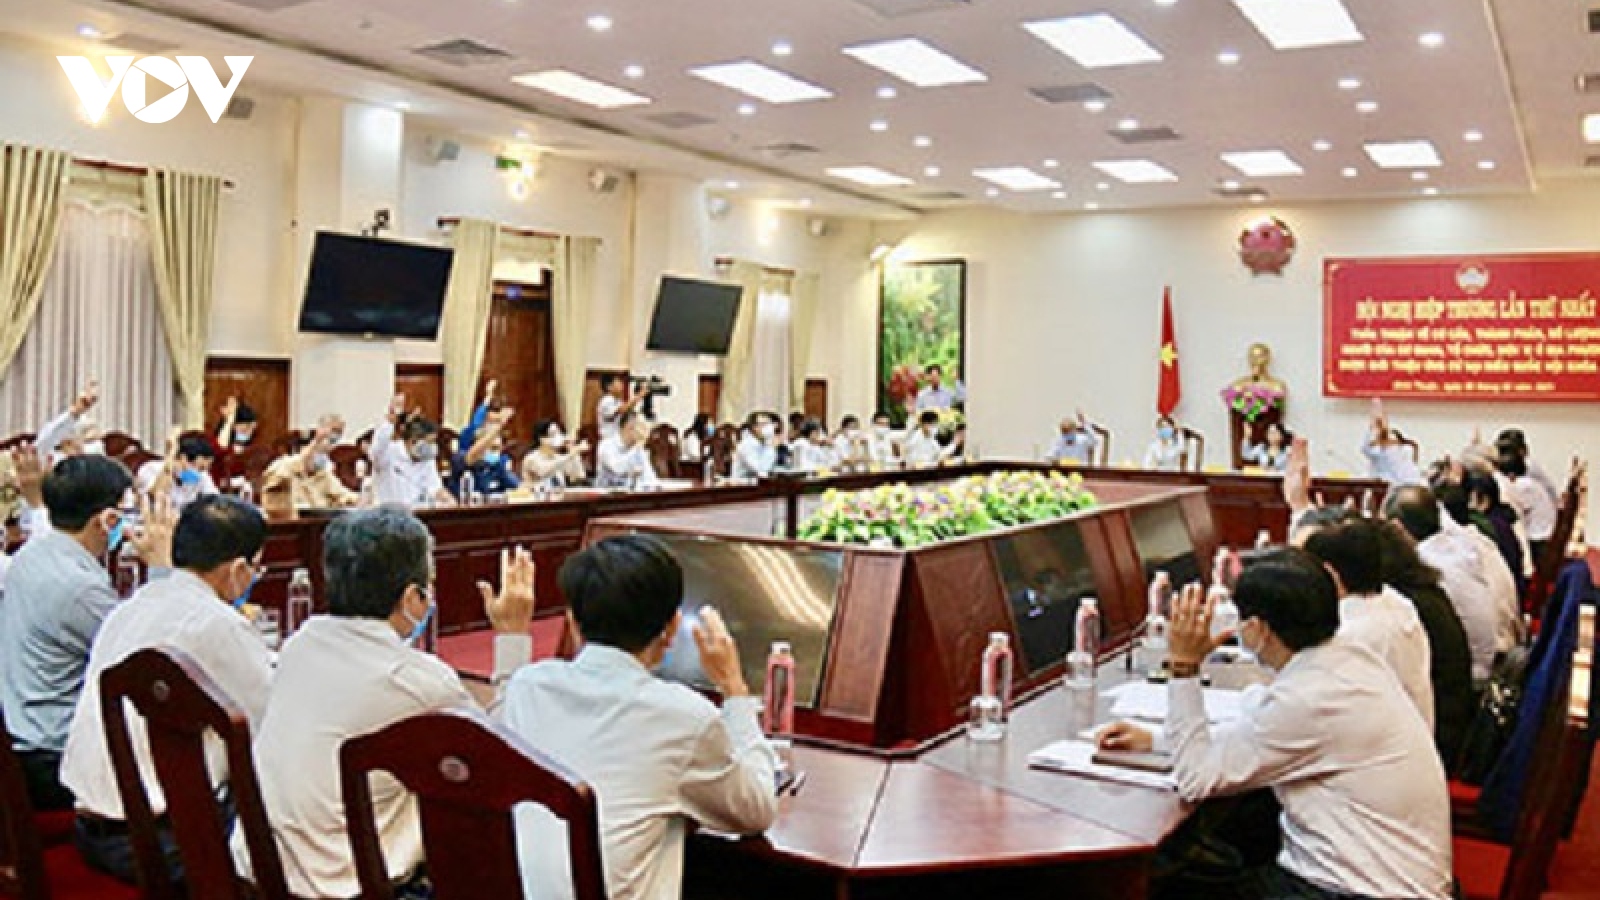 Bình Thuận được phân bổ 7 đại biểu Quốc hội và 53 đại biểu HĐND